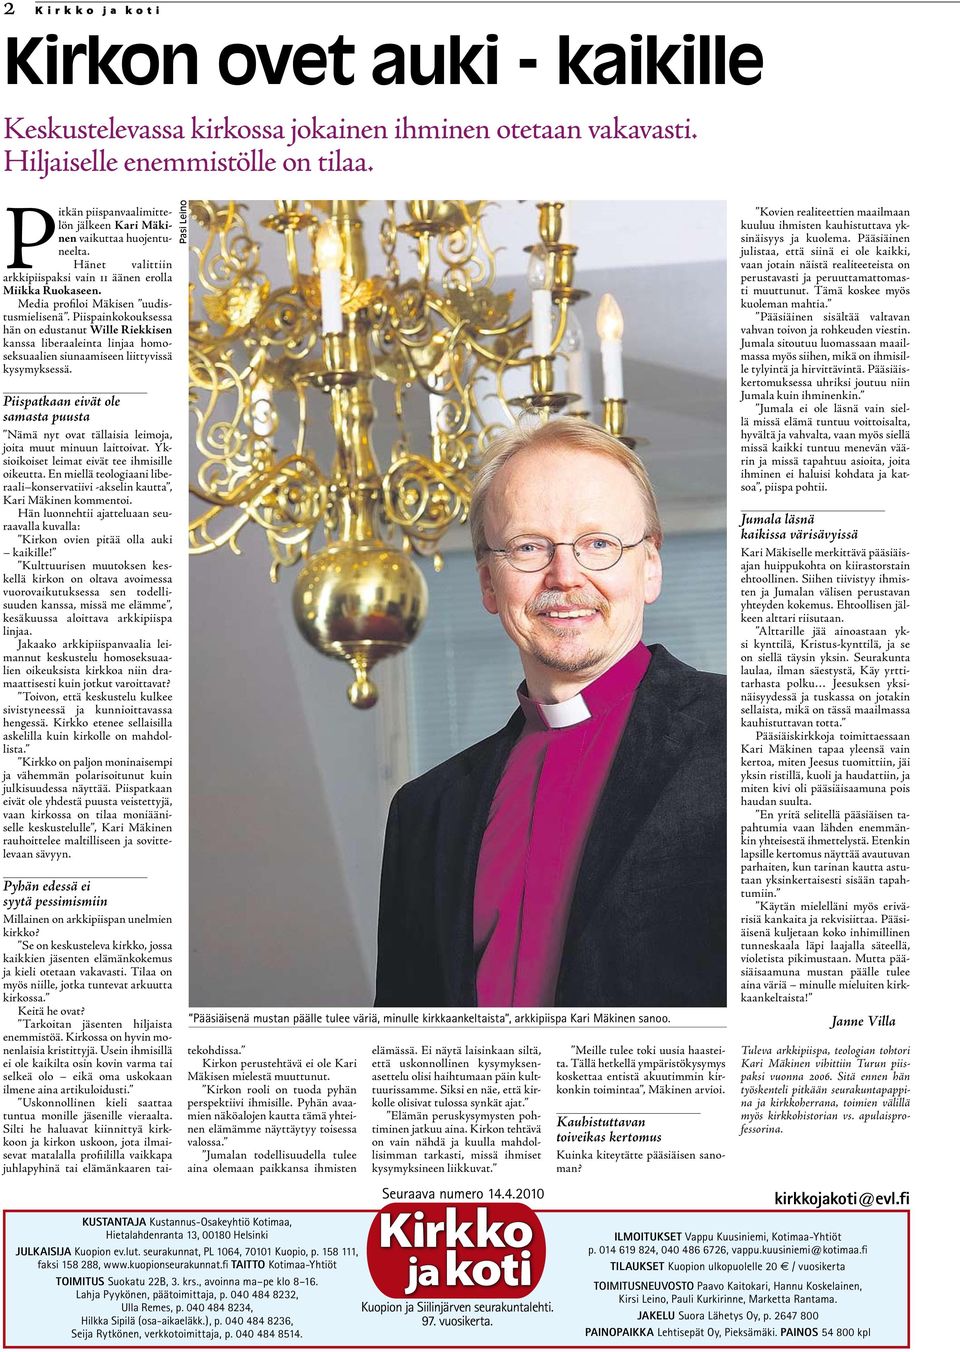 Piispainkokouksessa hän on edustanut Wille Riekkisen kanssa liberaaleinta linjaa homoseksuaalien siunaamiseen liittyvissä kysymyksessä.